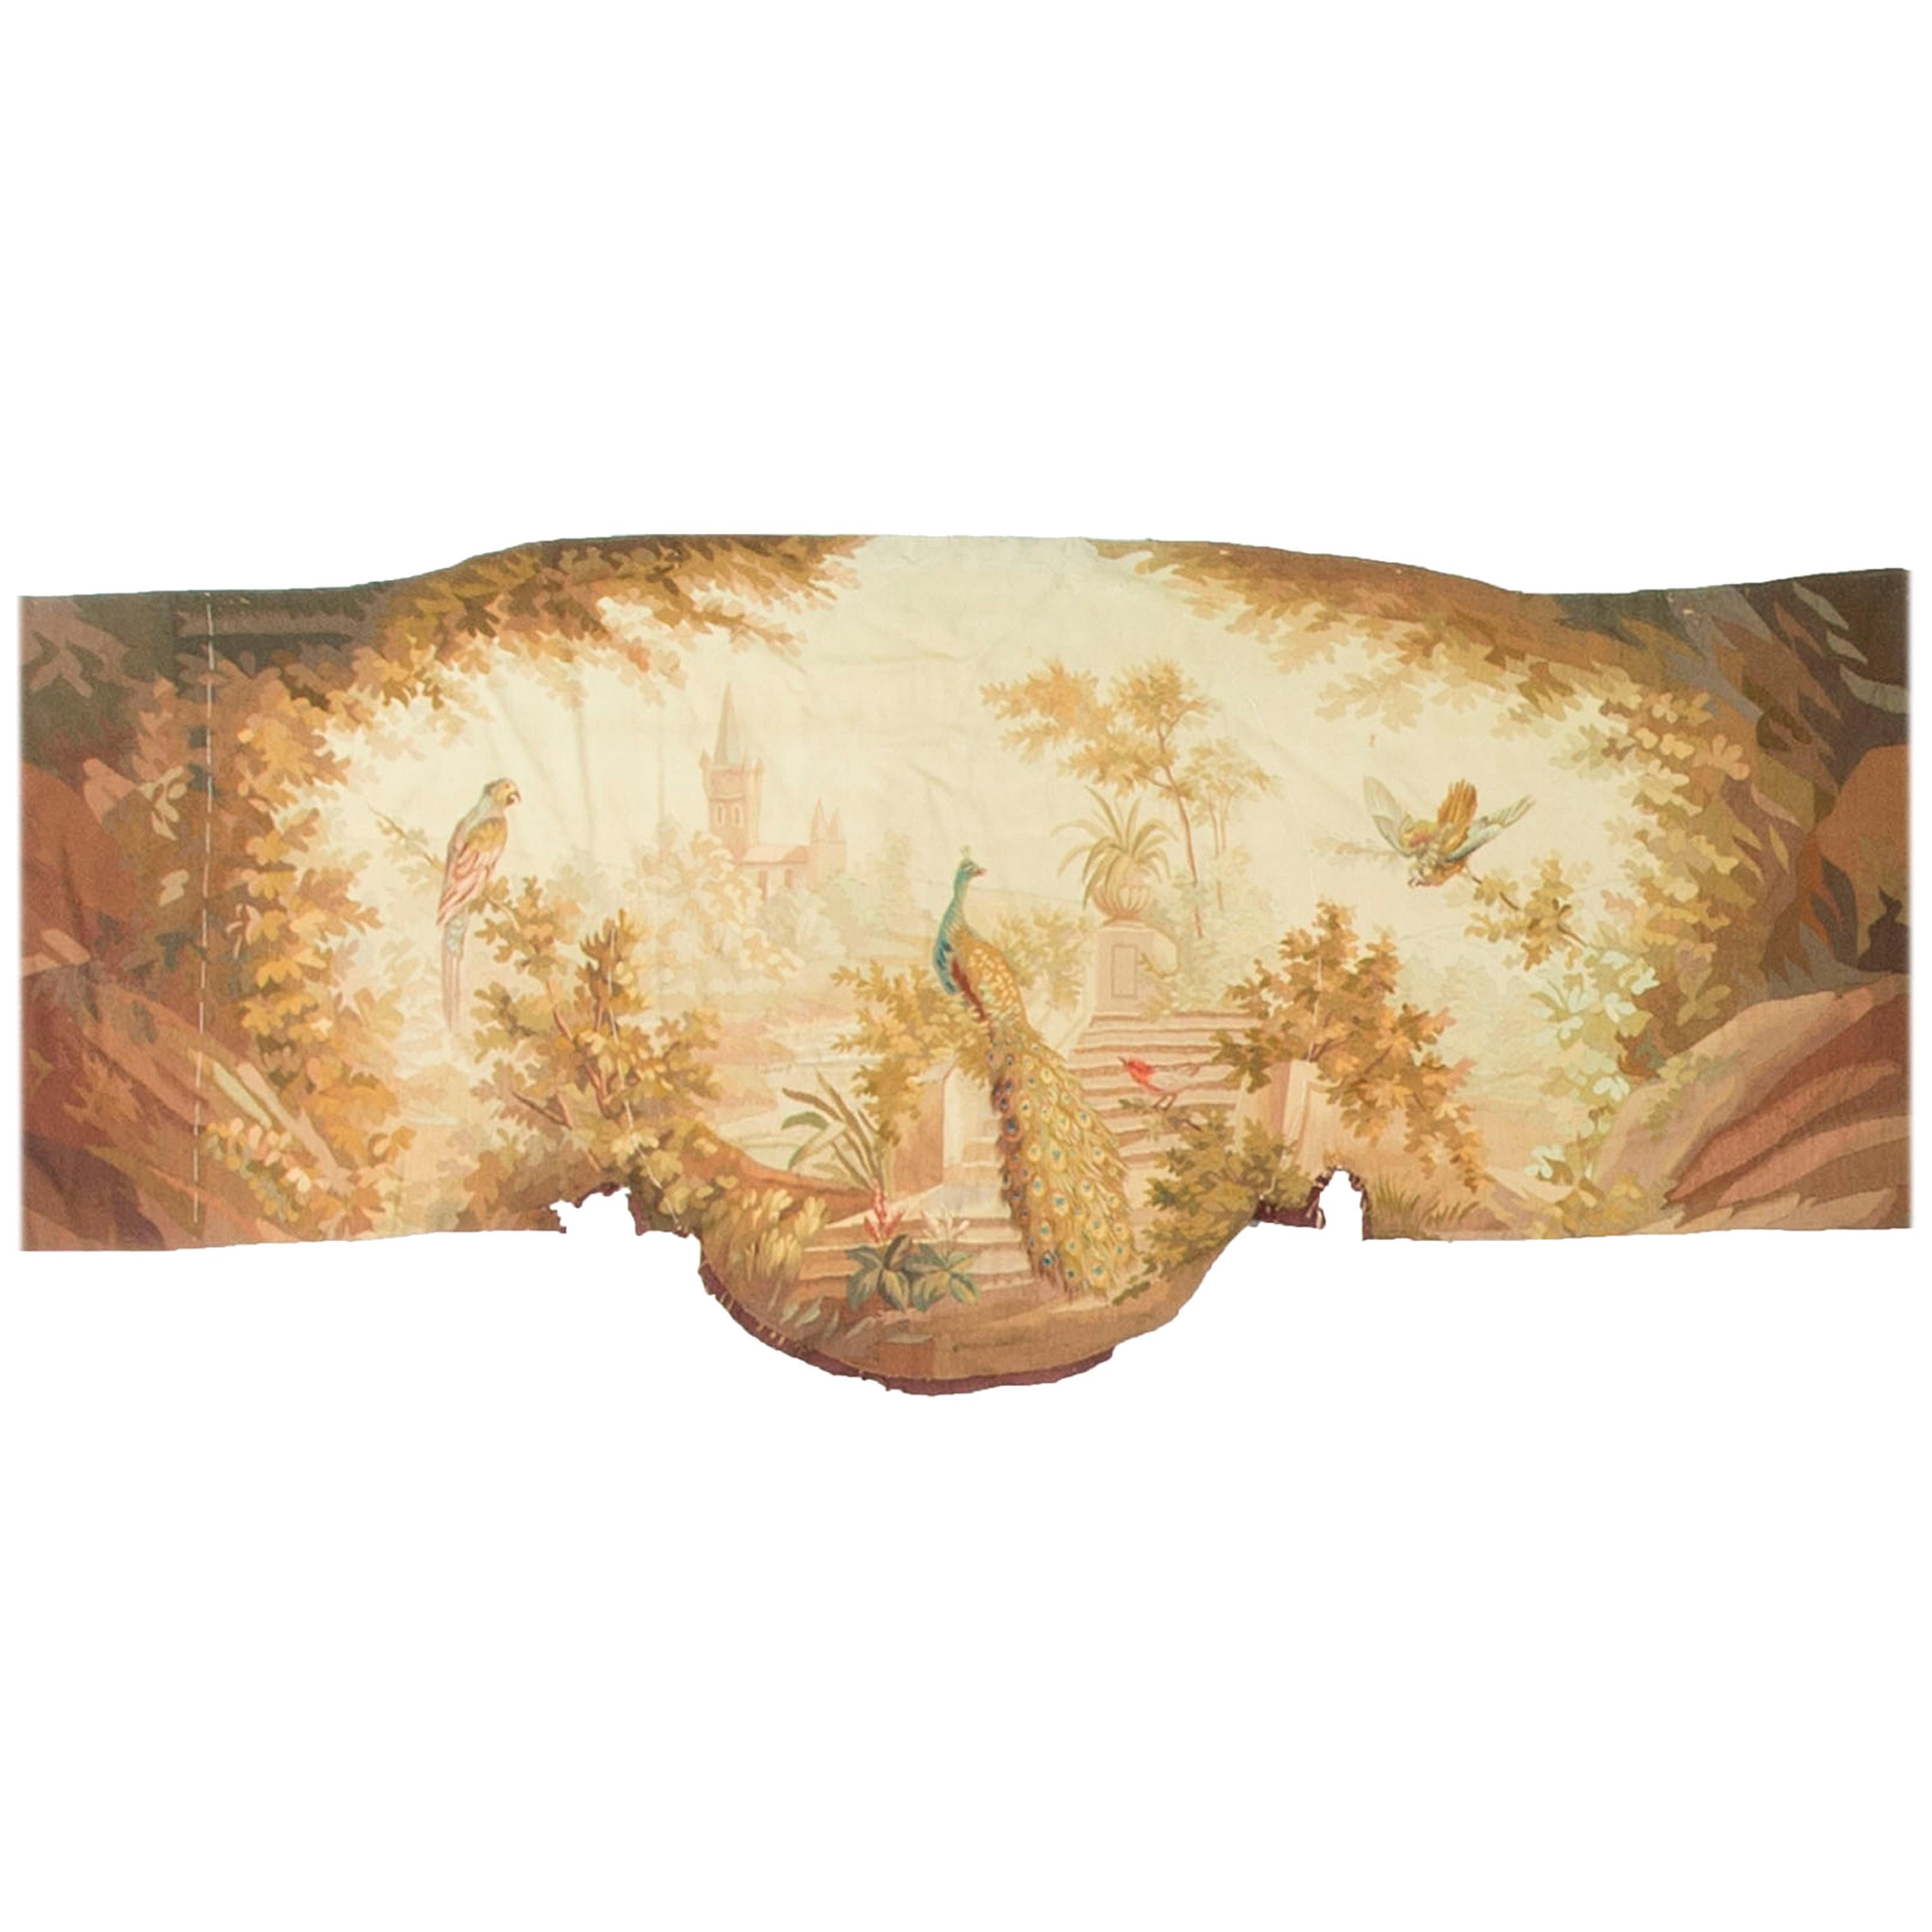 Panneau de tapisserie française, datant d'environ 1830